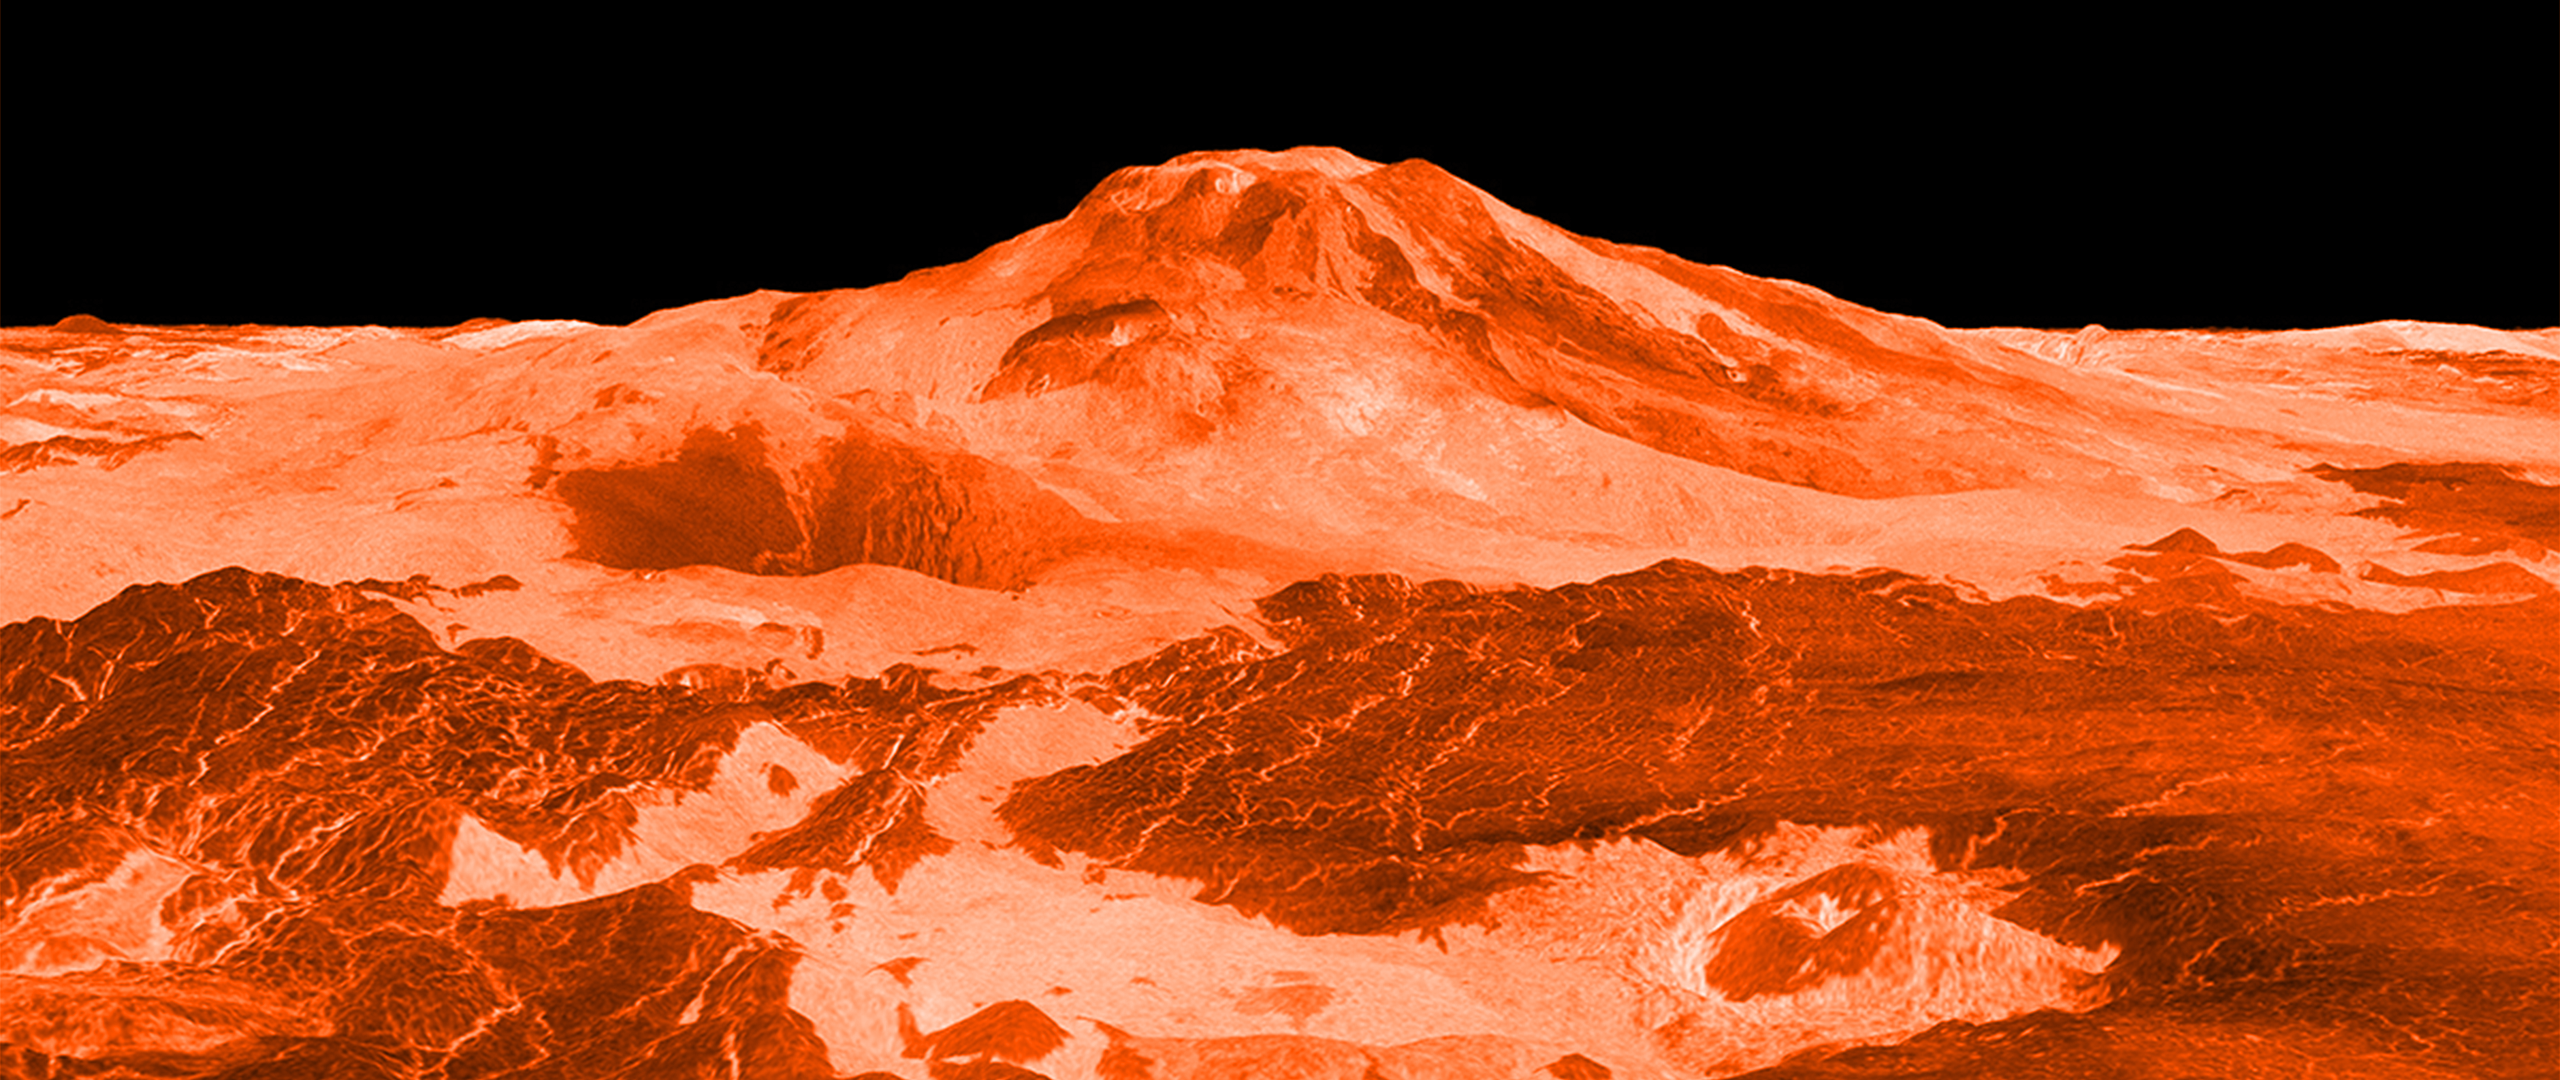 Fosfiny, biosfery i życie pozaziemskie – co w zasadzie odkryli, a czego nie odkryli ostatnio naukowcy na Wenus?